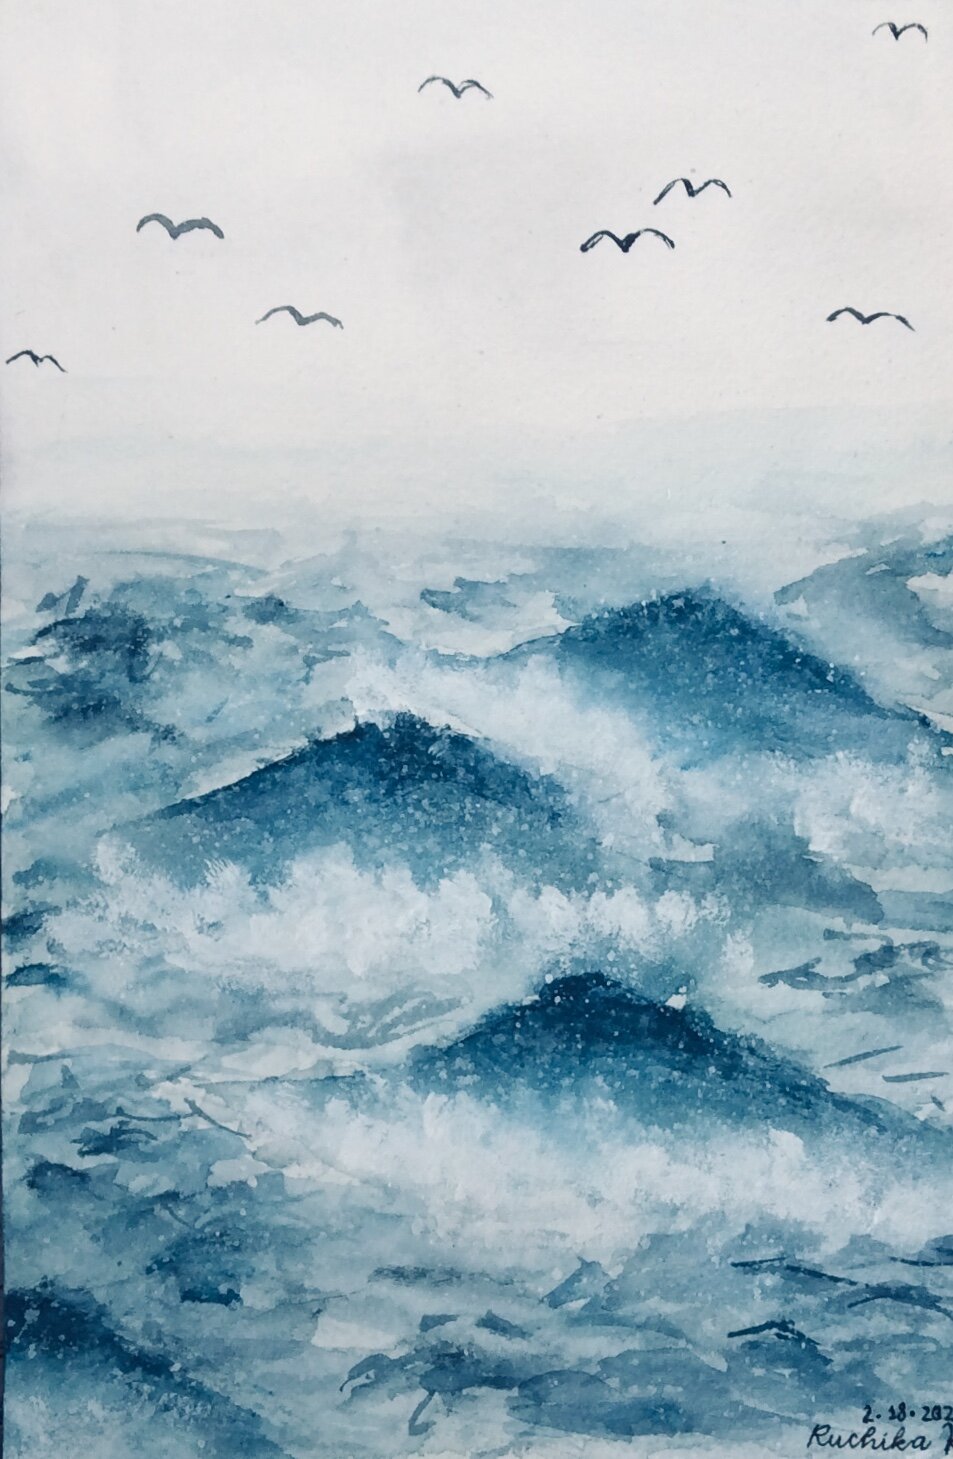 misty_ocean_waves.jpg